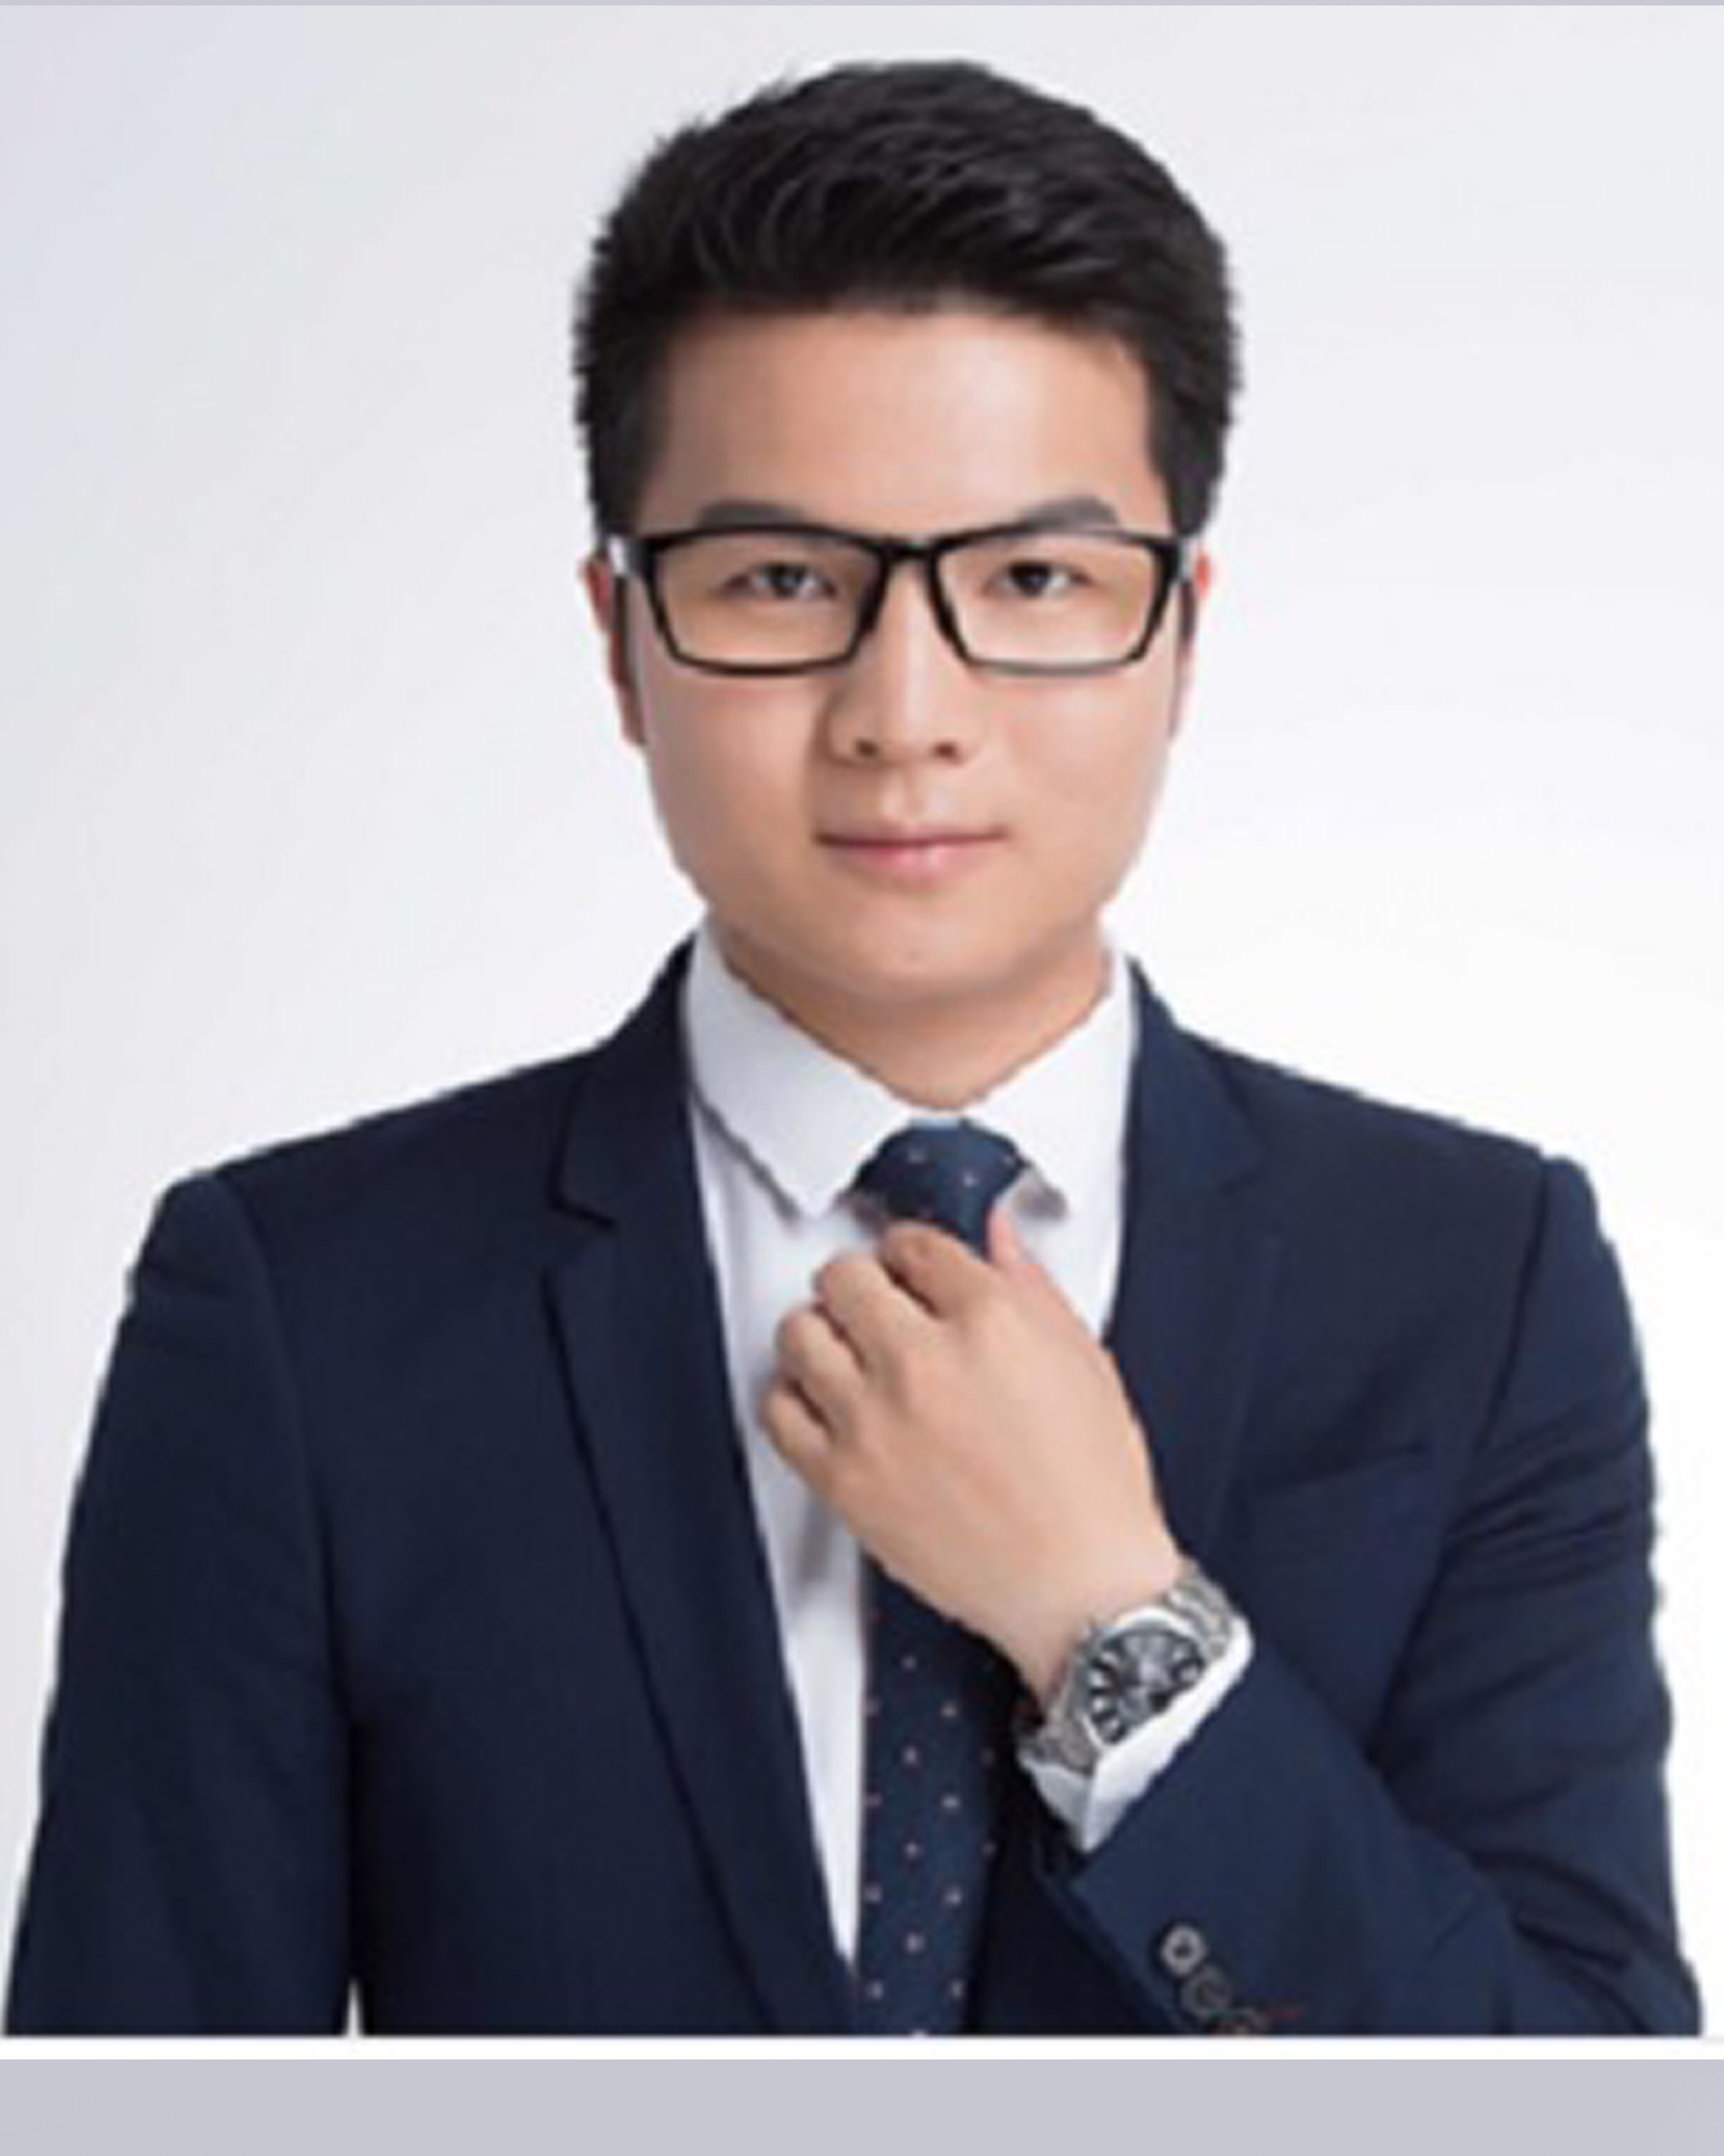 Zhang Youwu